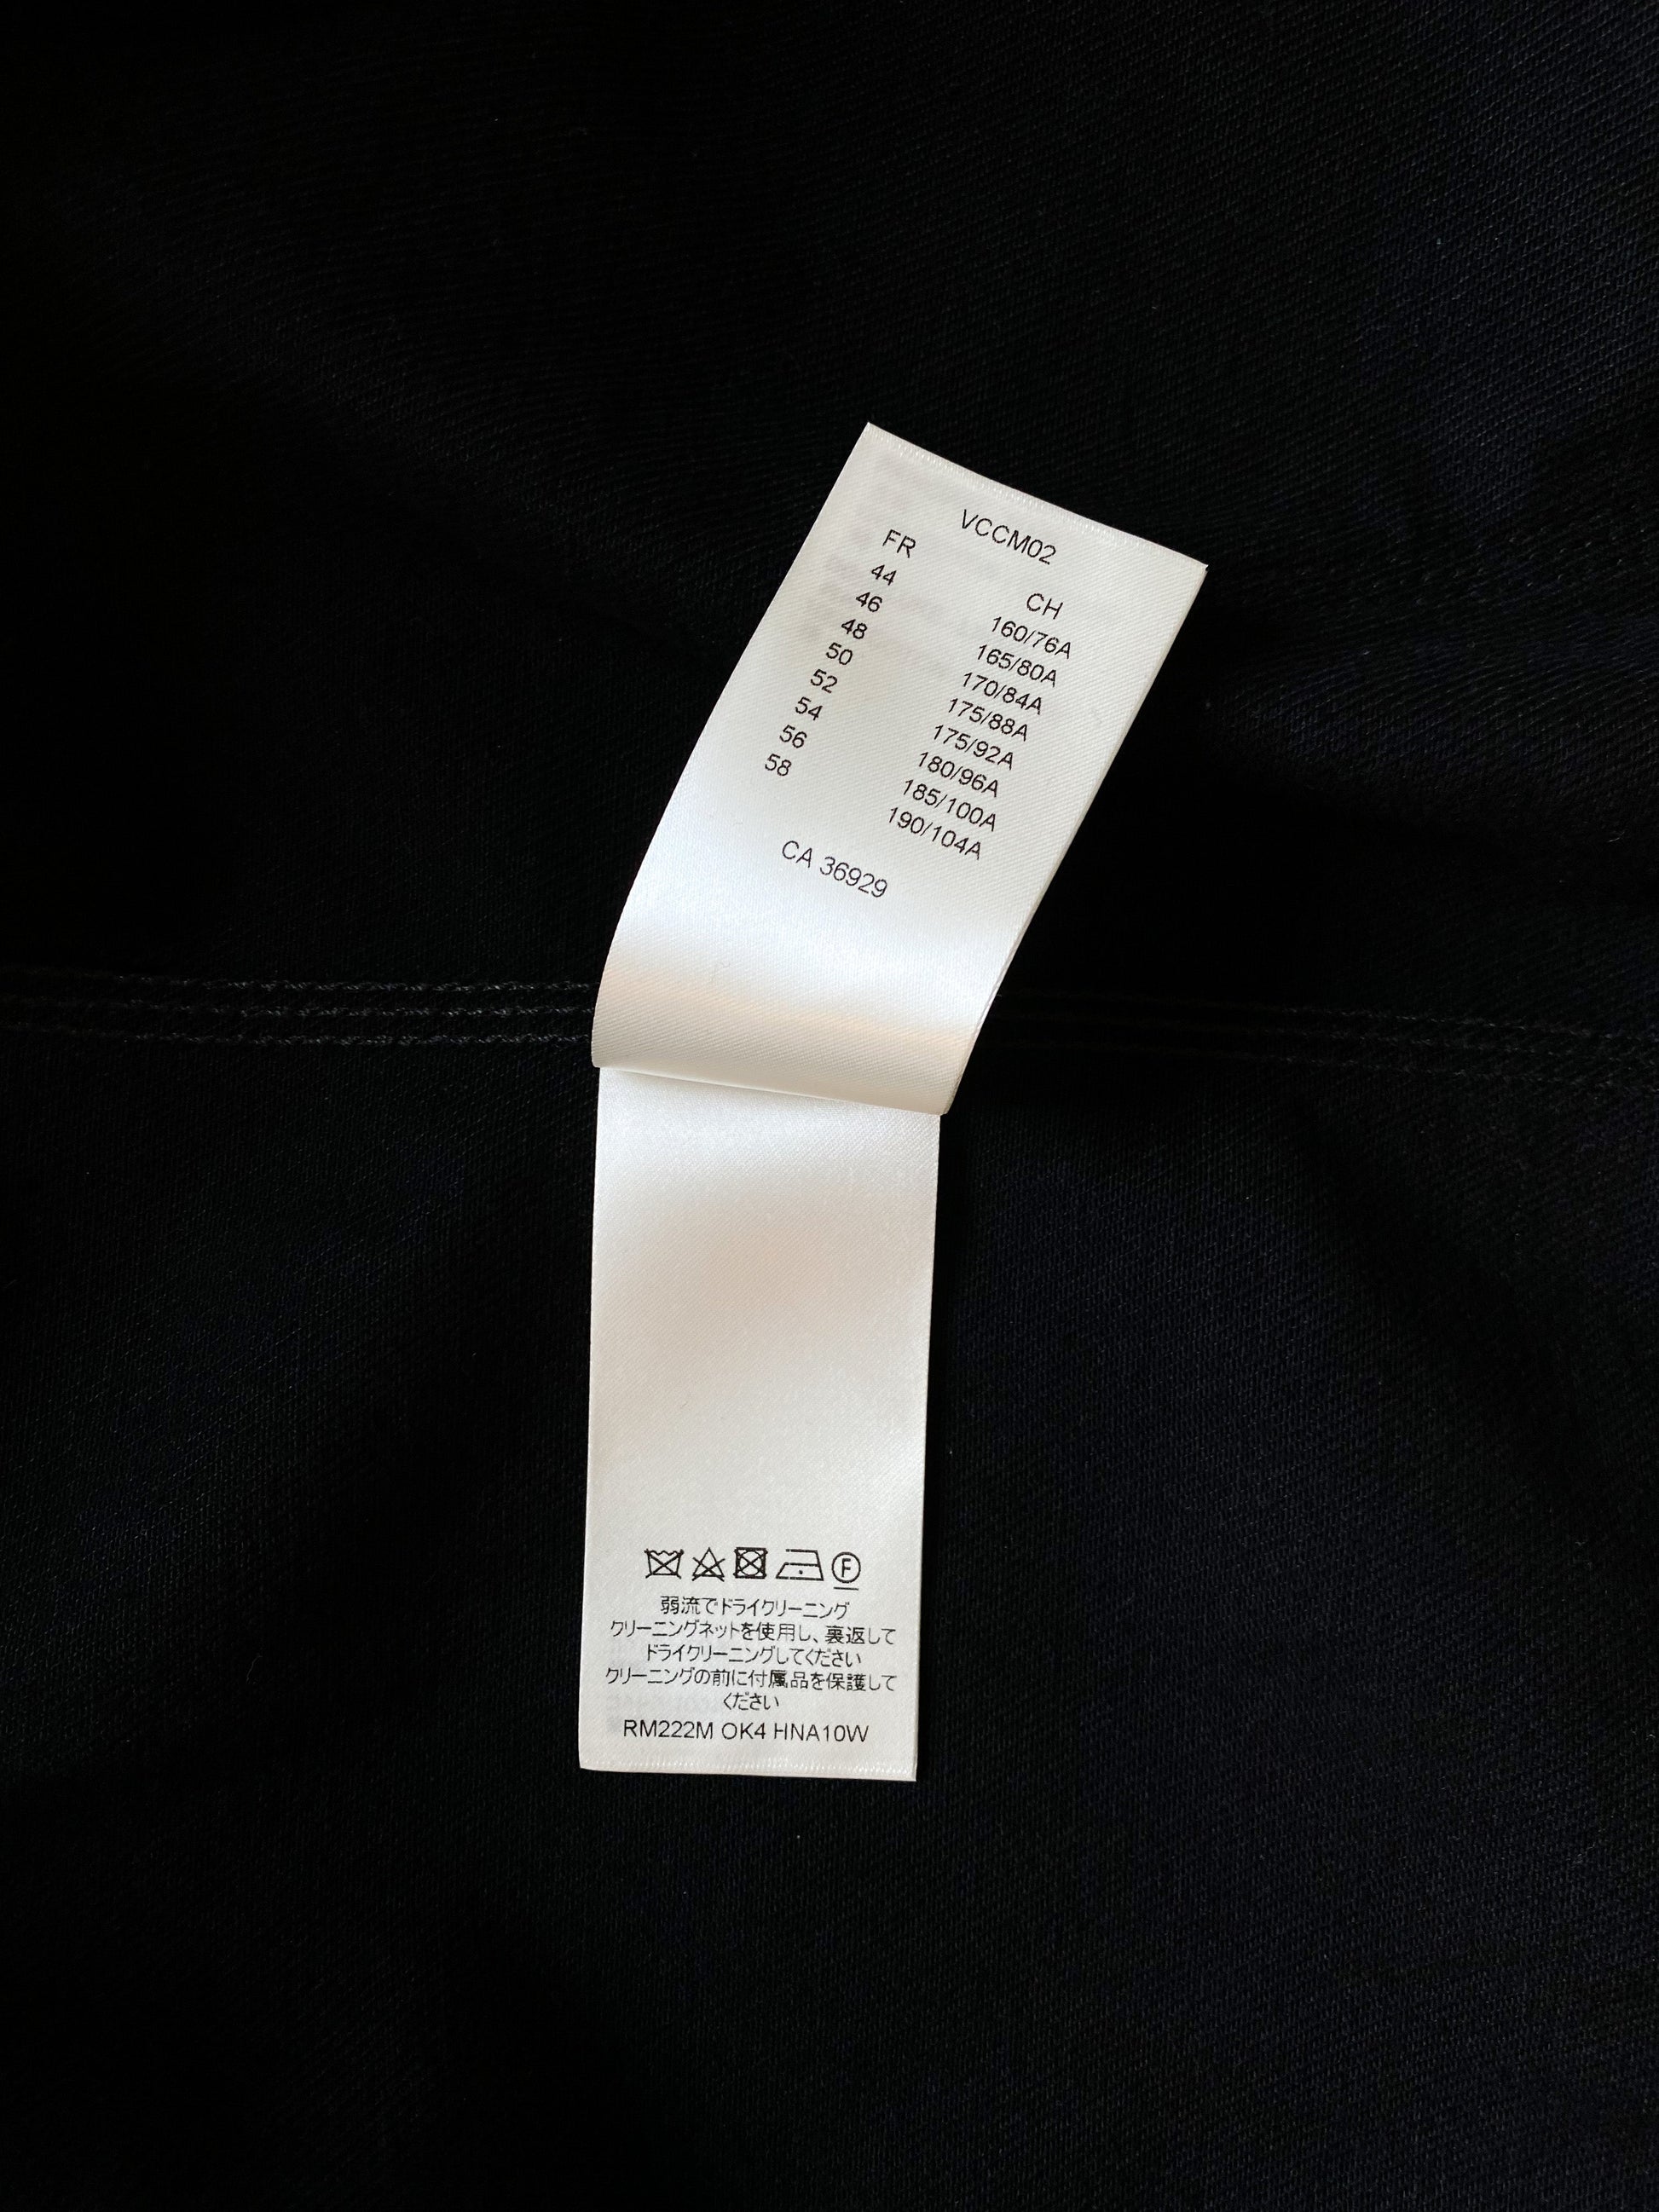 Louis Vuitton Black Monogram Carpenter Hooded Jacket